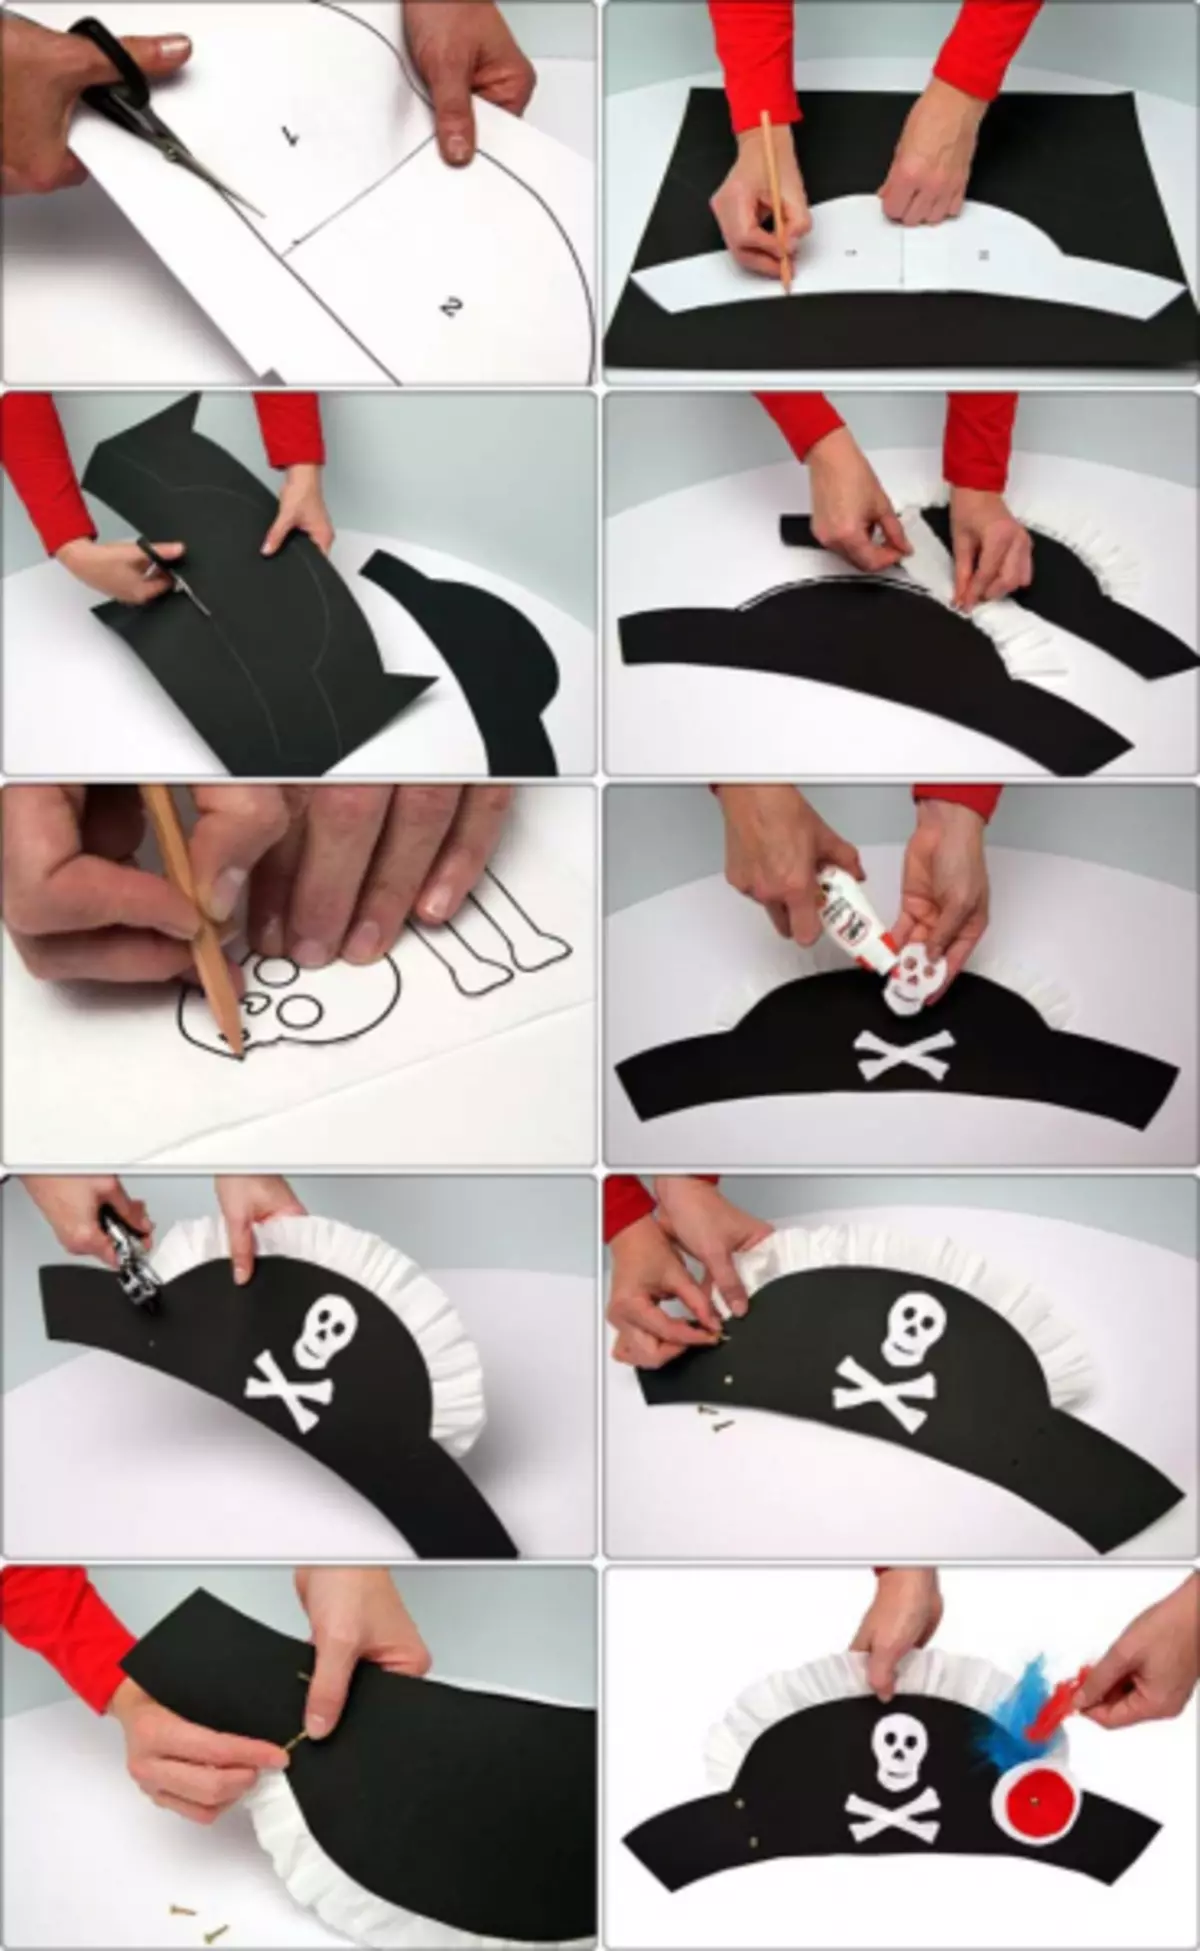 Pirate Hat nganggo tangan saka Kertas: Kelas Master karo video